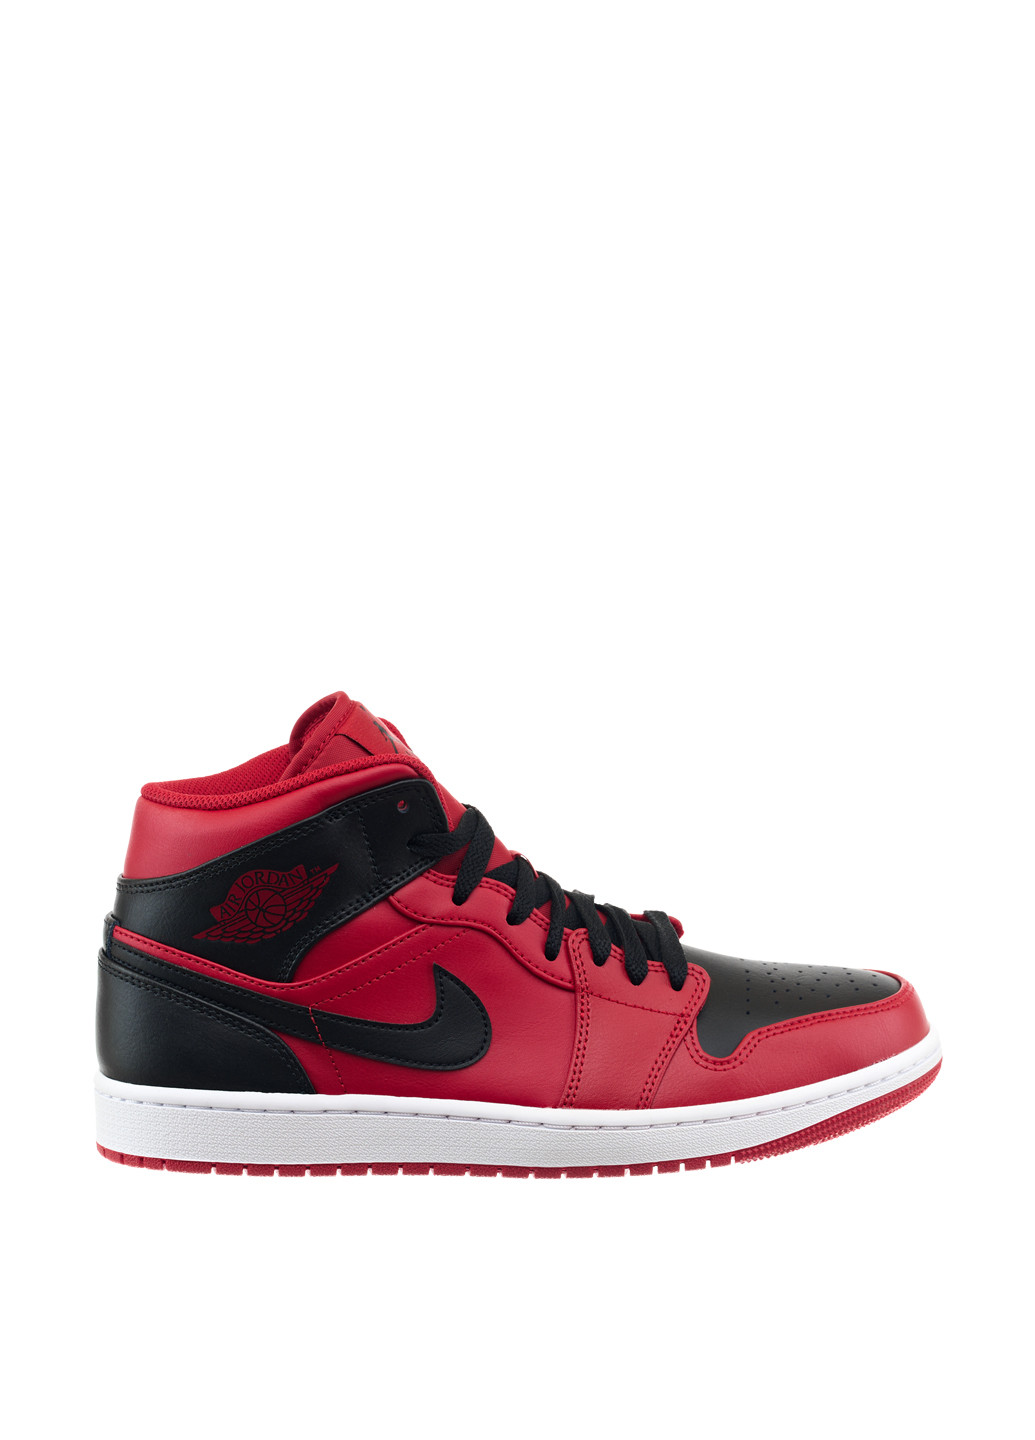 Червоні Осінні кросівки 554724-660_2024 Jordan 1 MID